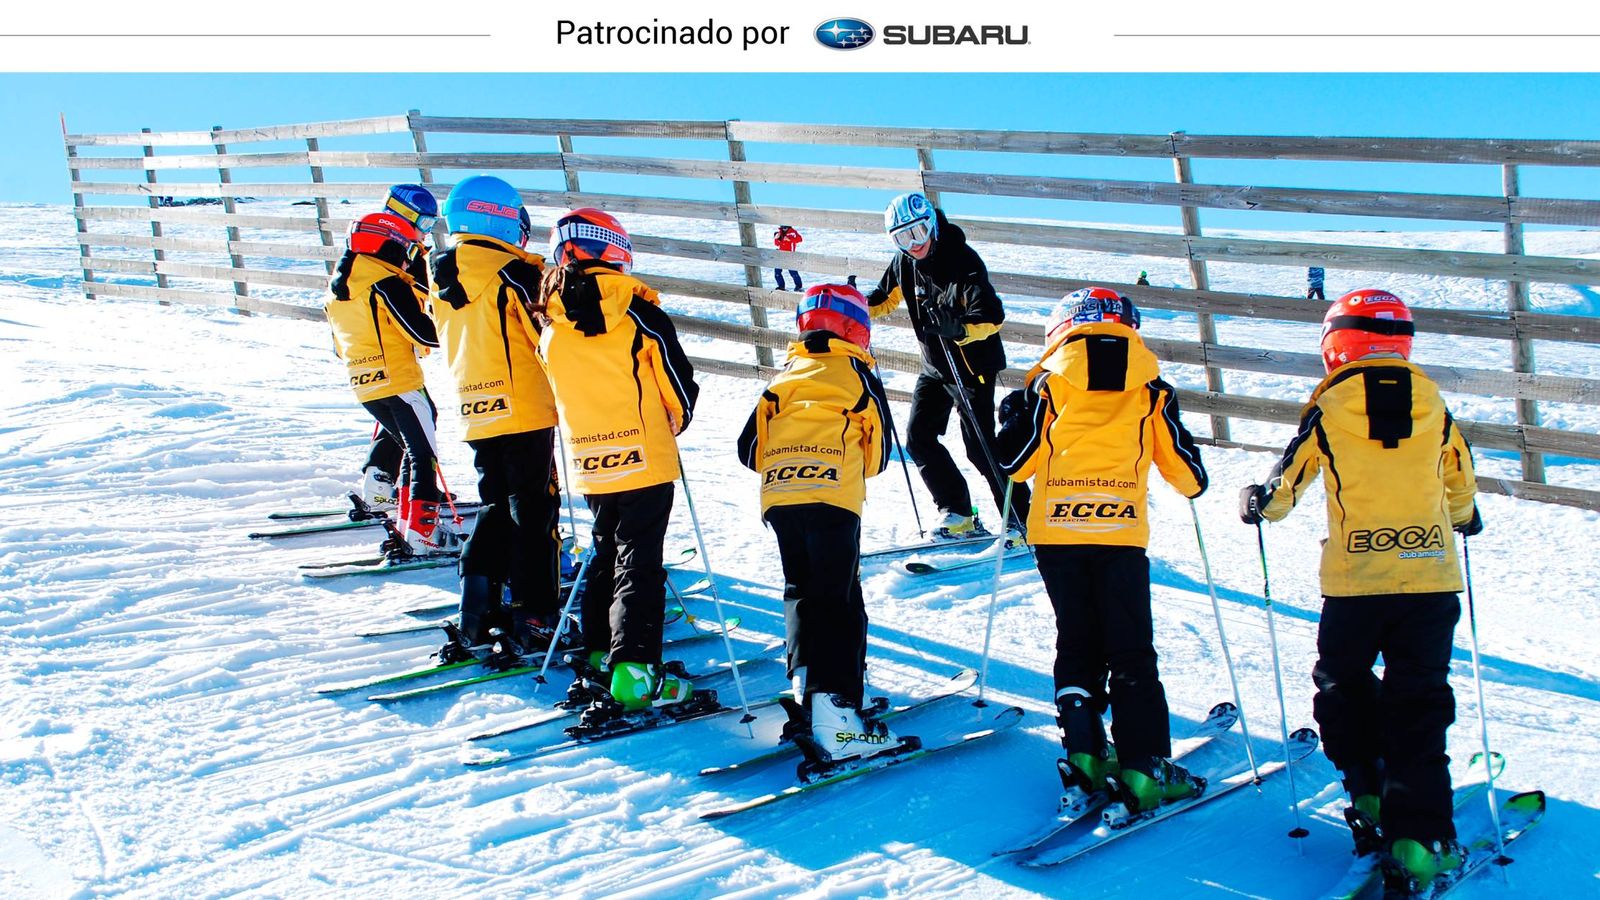 Foto: Los miembros de un equipo de esquí, durante un entrenamiento